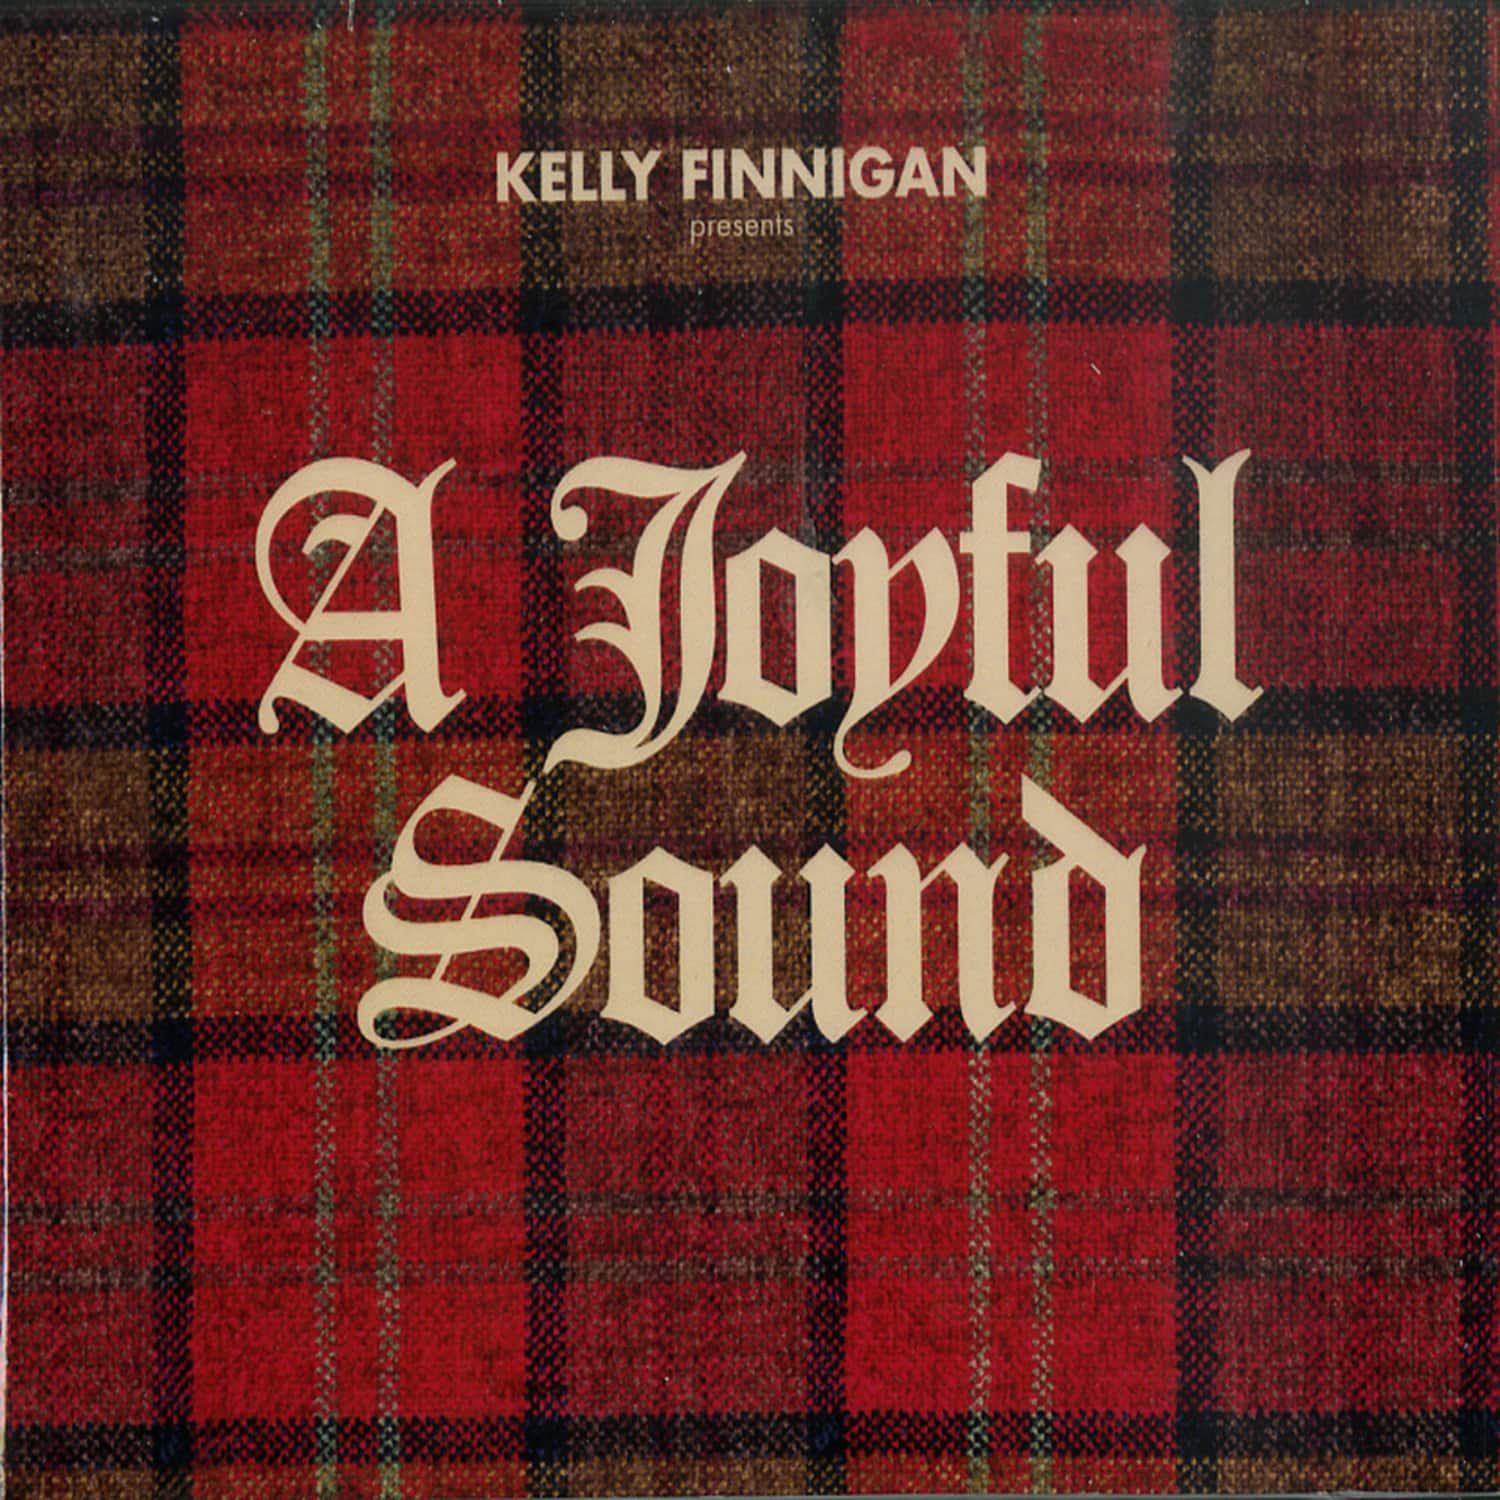 Kelly Finnigan - A JOYFUL SOUND 